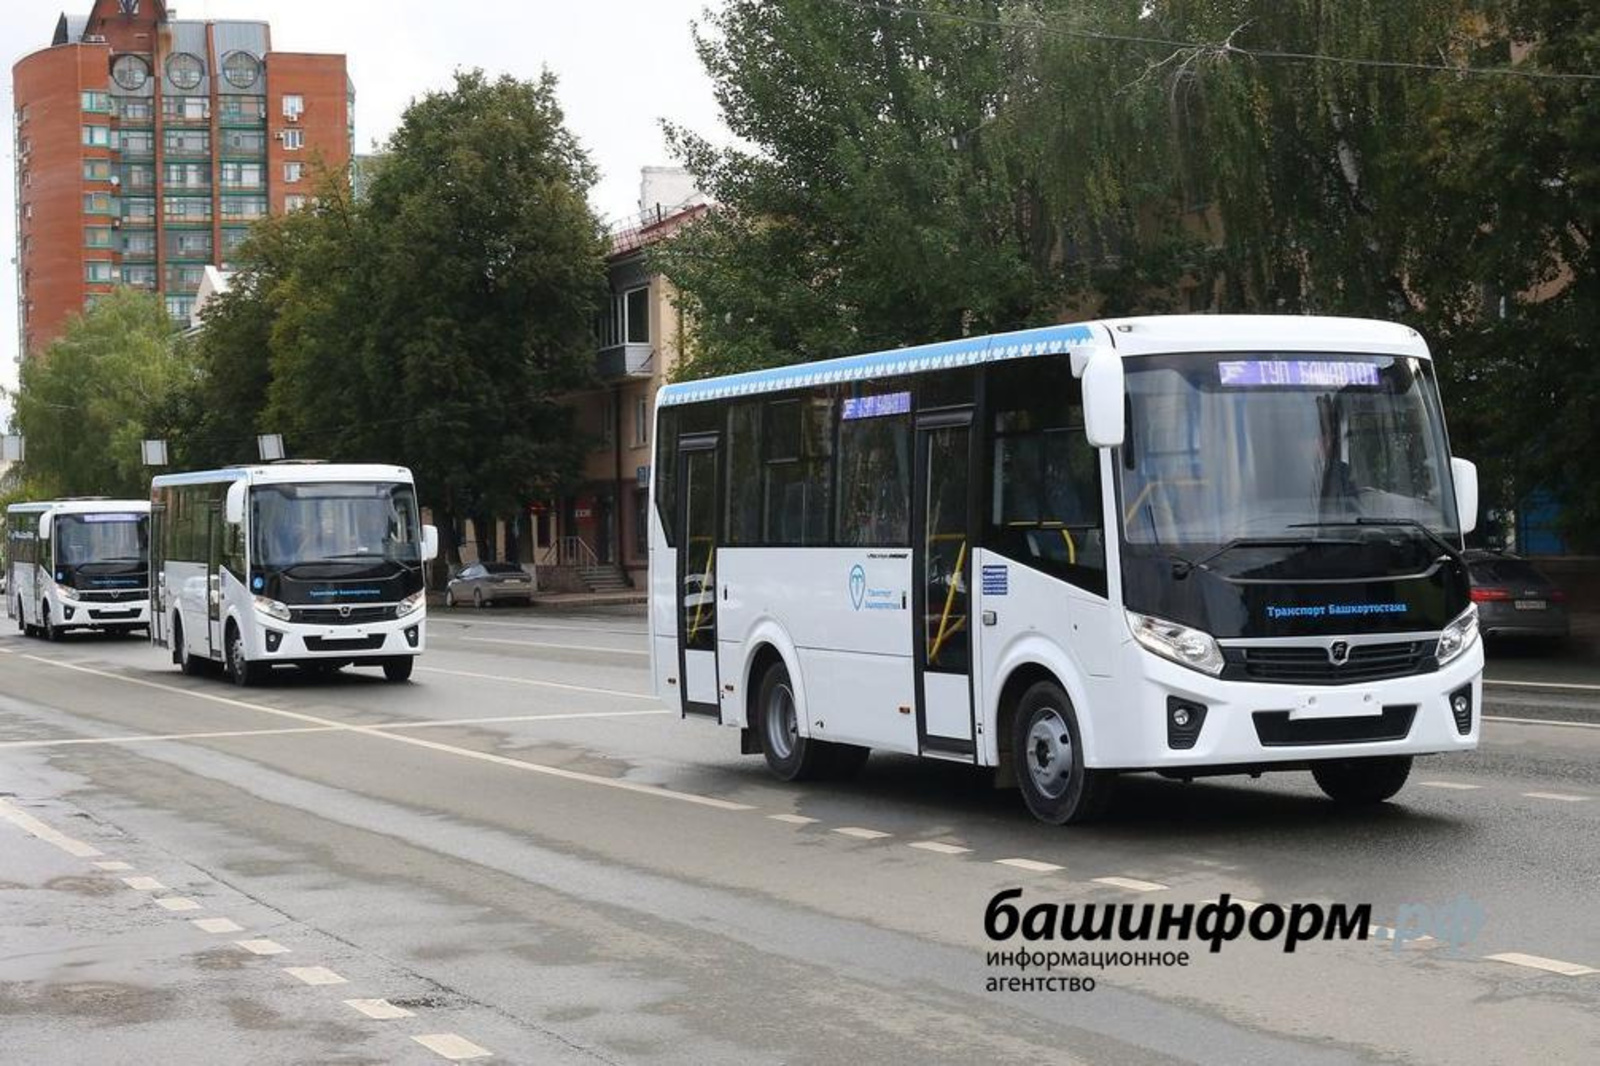 Радий Хабиров пообещал улучшить качество пассажирского транспорта в Башкирии